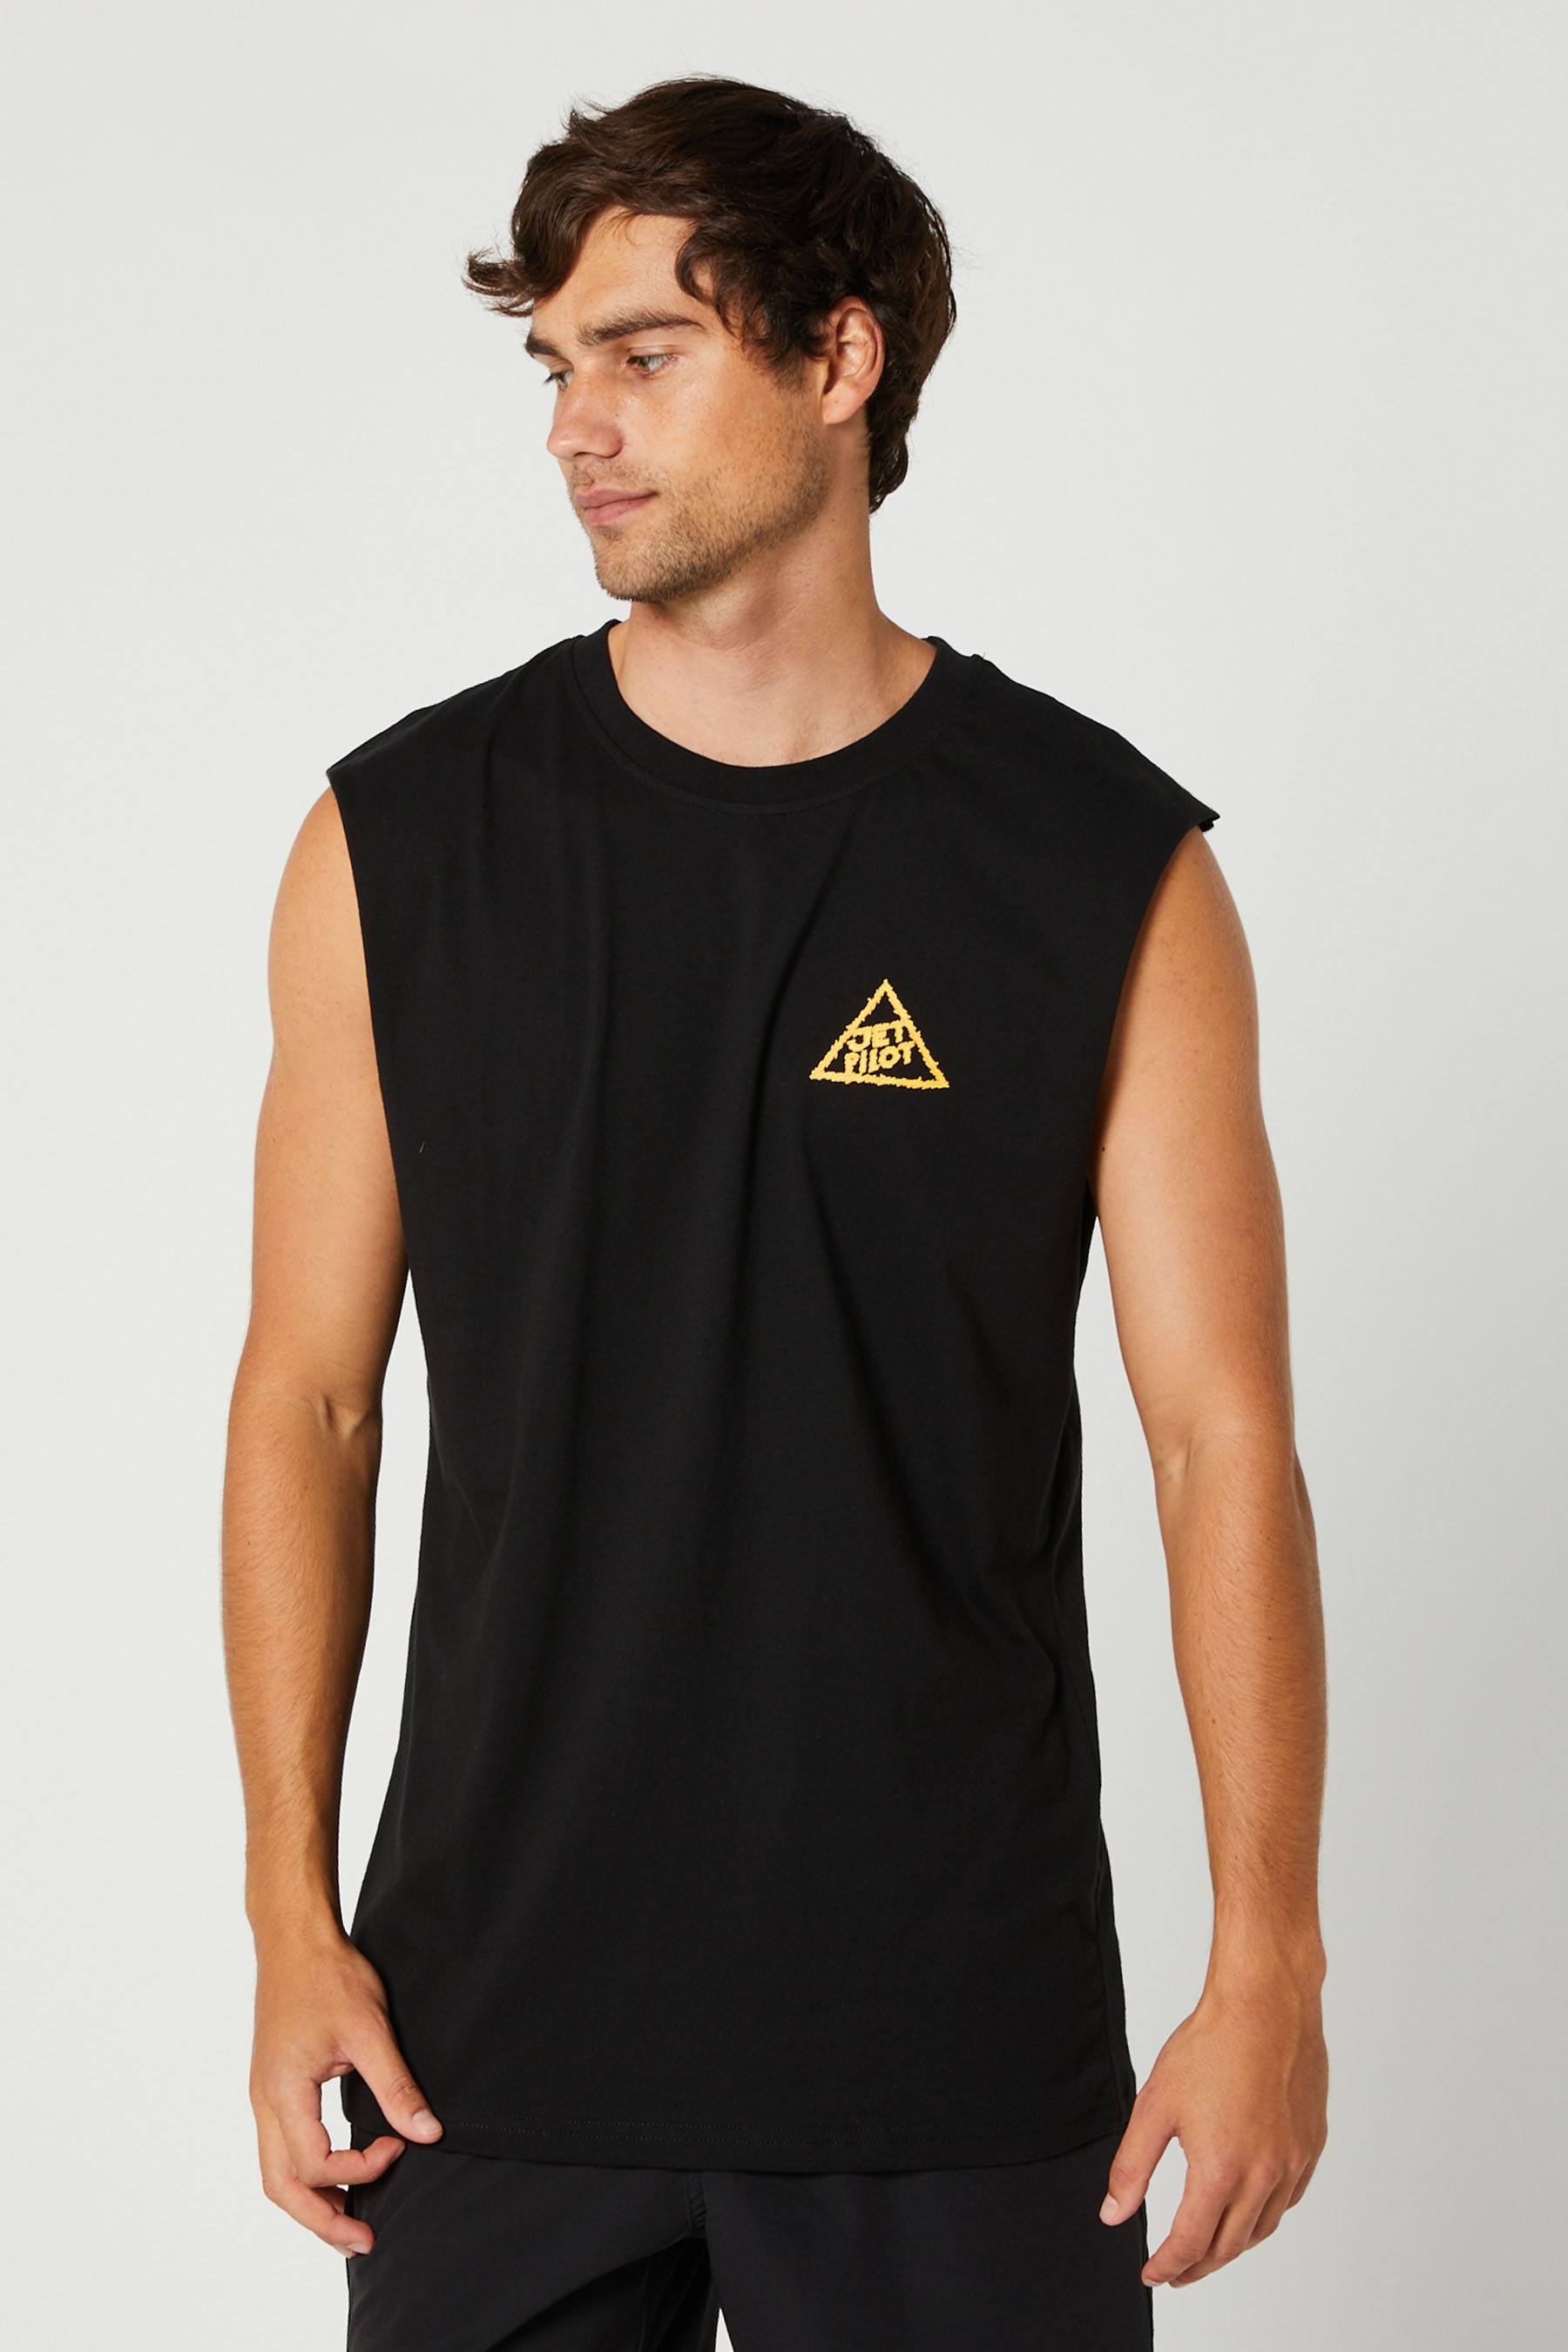 Jetpilot Thunder Mens Muscle T-Shirt Black